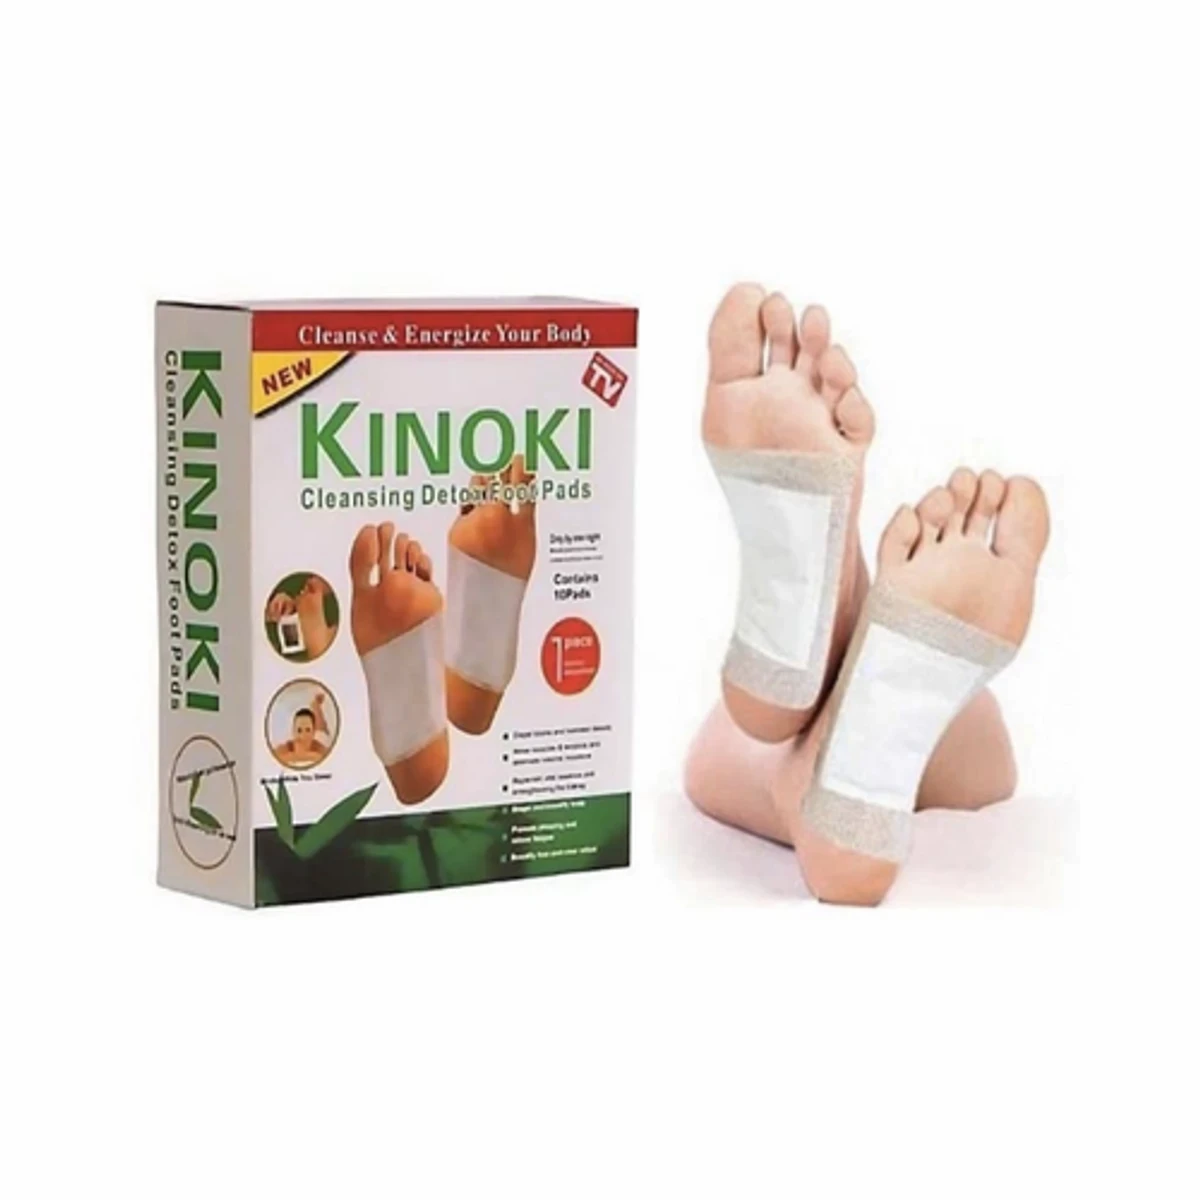 kinoki detox foot pad 1 Boxes